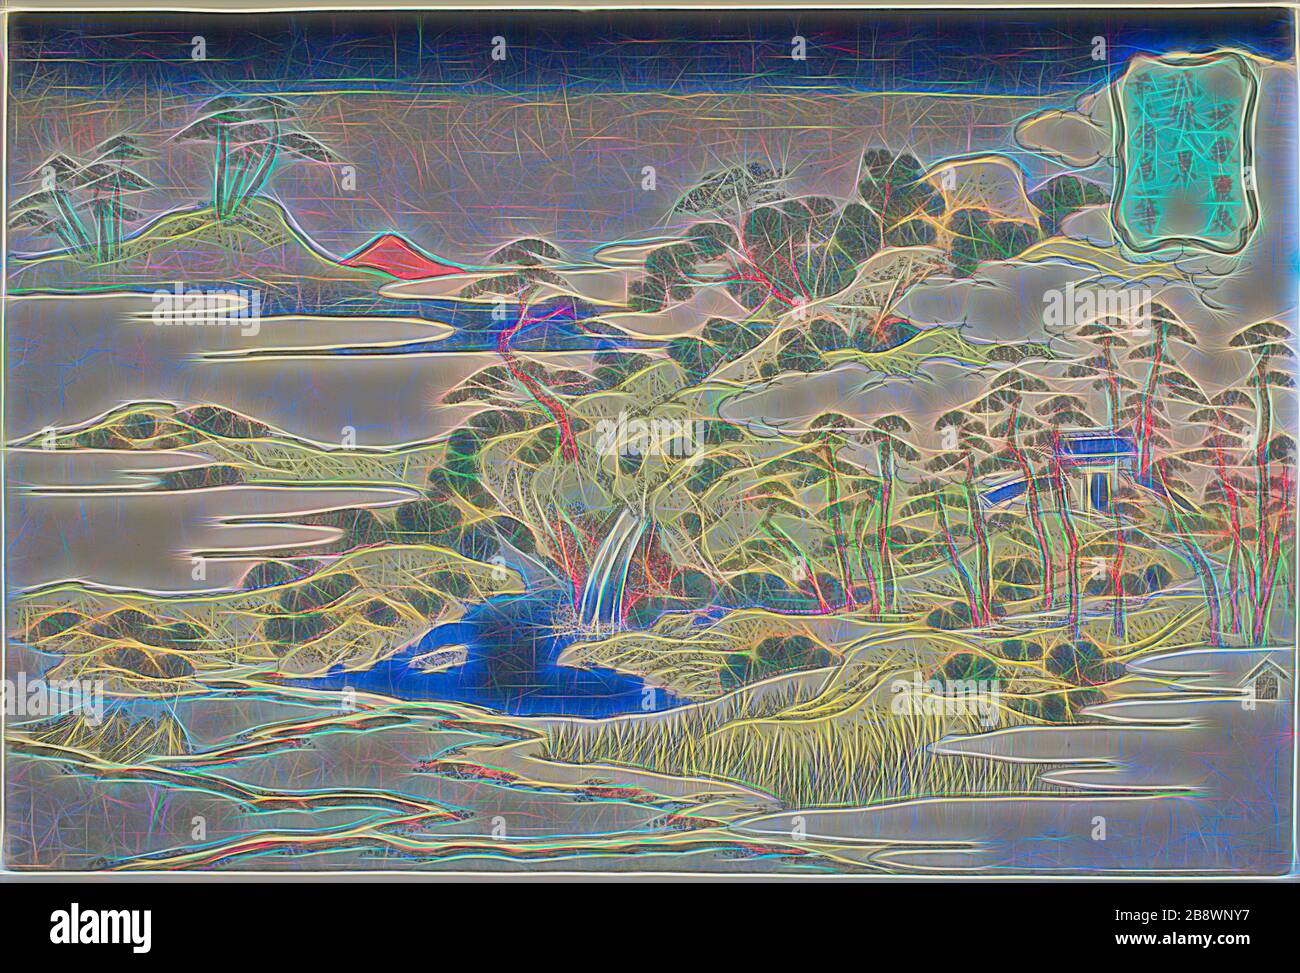 Der heilige Frühling auf dem Berg der Festung (Jogaku reisen), aus der Serie acht Ansichten der Ryukyu-Inseln (Ryukyu hakkei), c Im Jahre 1810, Katsushika Hokusai ?? ??, Japanisch, 1760-1849, Japan, Farbholzholzmuster, oban, 25,1 x 37,5 cm (9 7/8 x 14 3/4 Zoll), von Gibon neu vorgestellt, Design von warmfröhlichem Leuchten von Helligkeit und Lichtstrahlen. Klassische Kunst mit moderner Note neu erfunden. Fotografie, inspiriert vom Futurismus, die dynamische Energie moderner Technologie, Bewegung, Geschwindigkeit und Kultur revolutionieren. Stockfoto